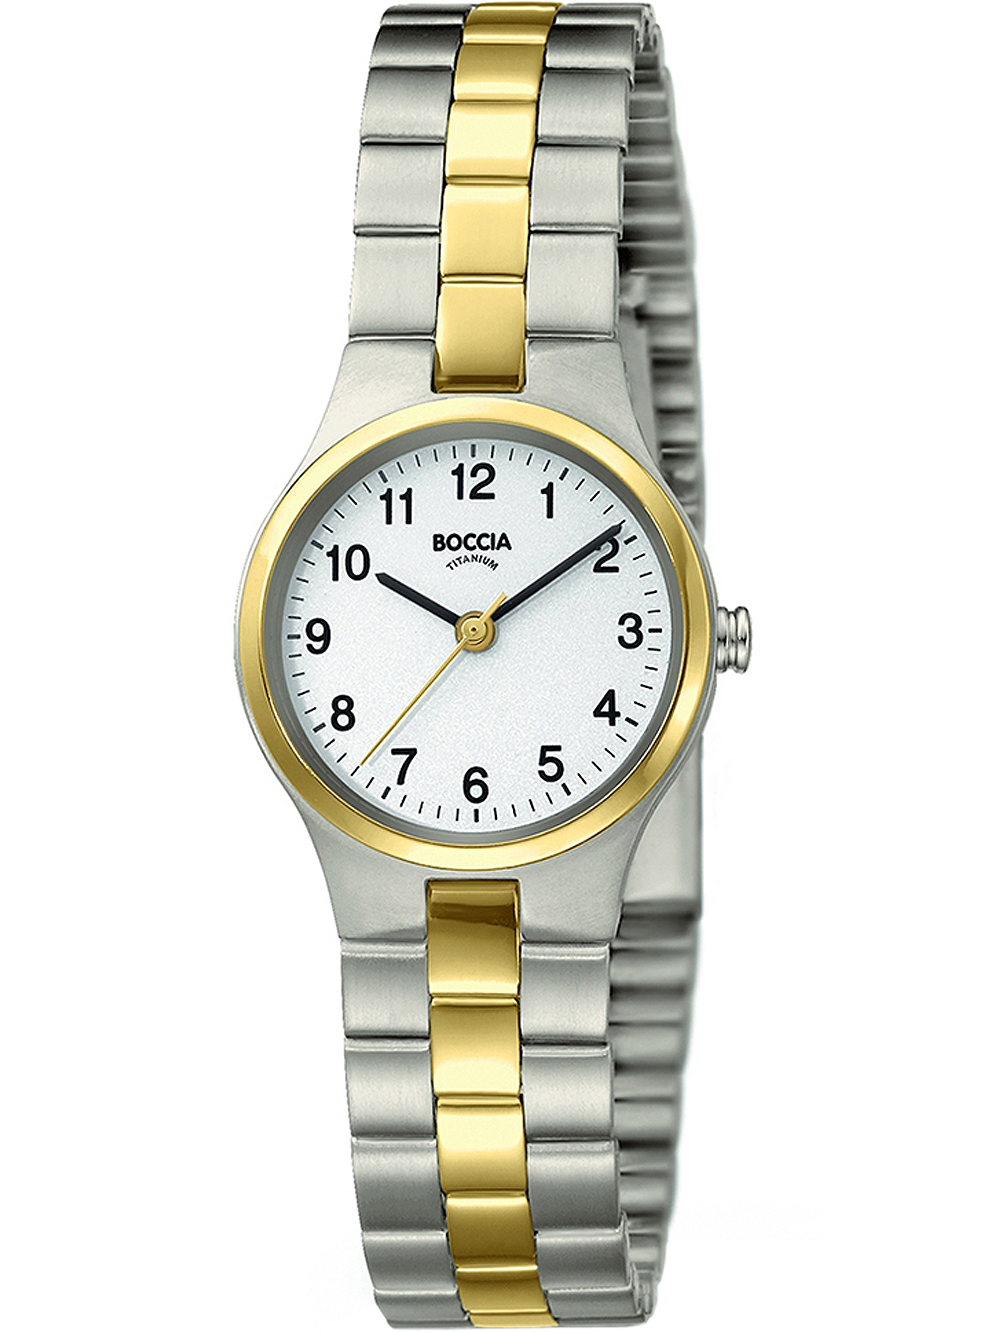 Dámské hodinky Boccia 3082-05 ladies watch titanium 25mm 5ATM